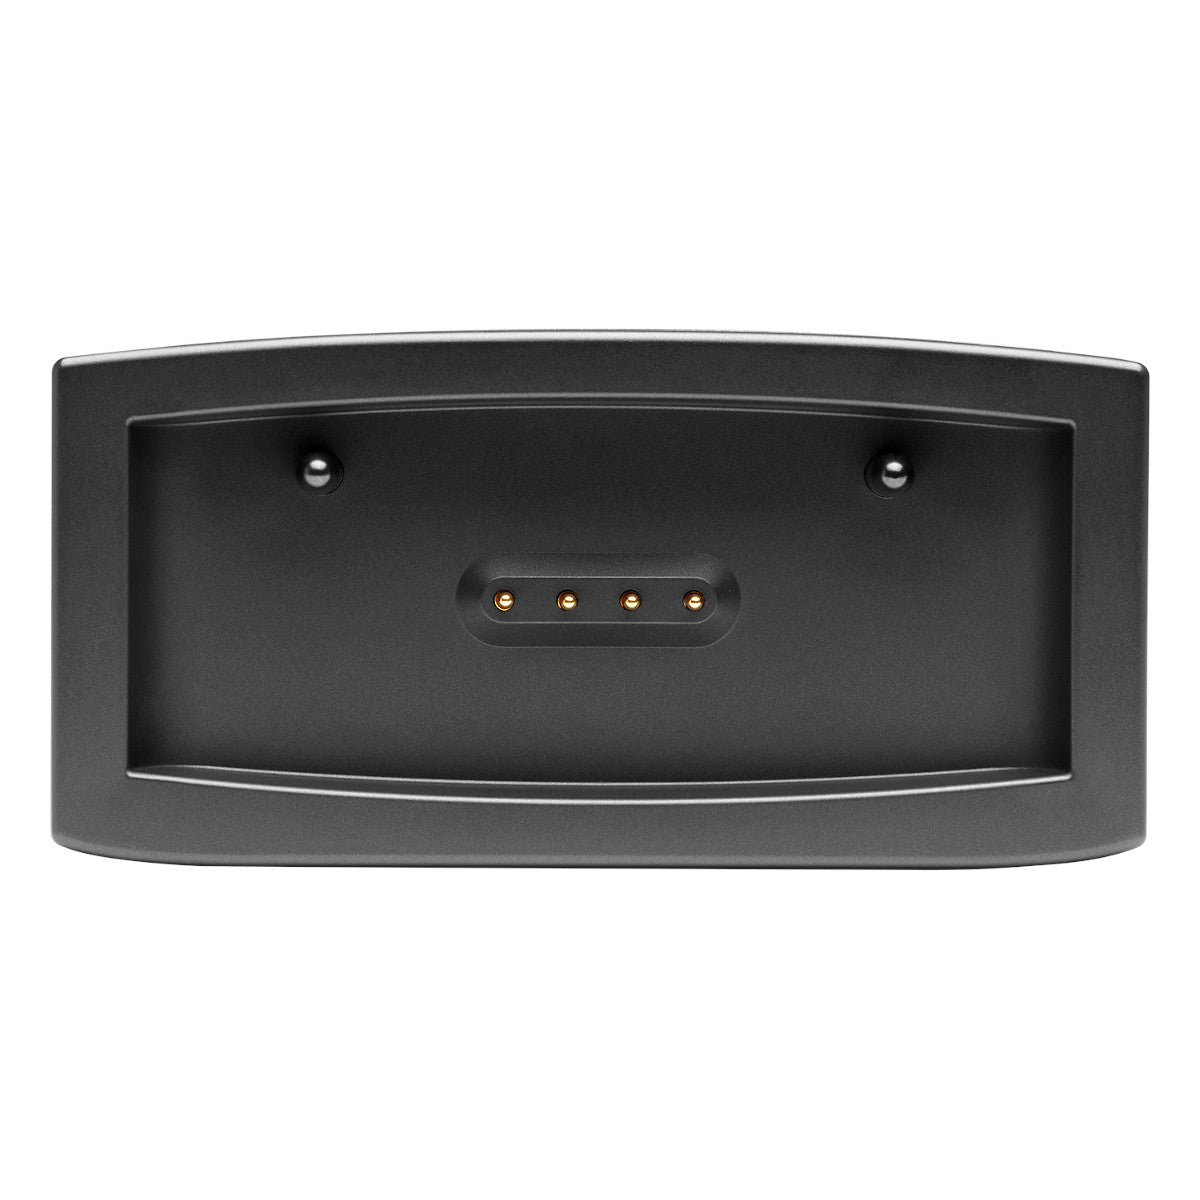 JBL Bar 9.1 Channel 3D Surround Sound Soundbar with Detachable Rear Speakers